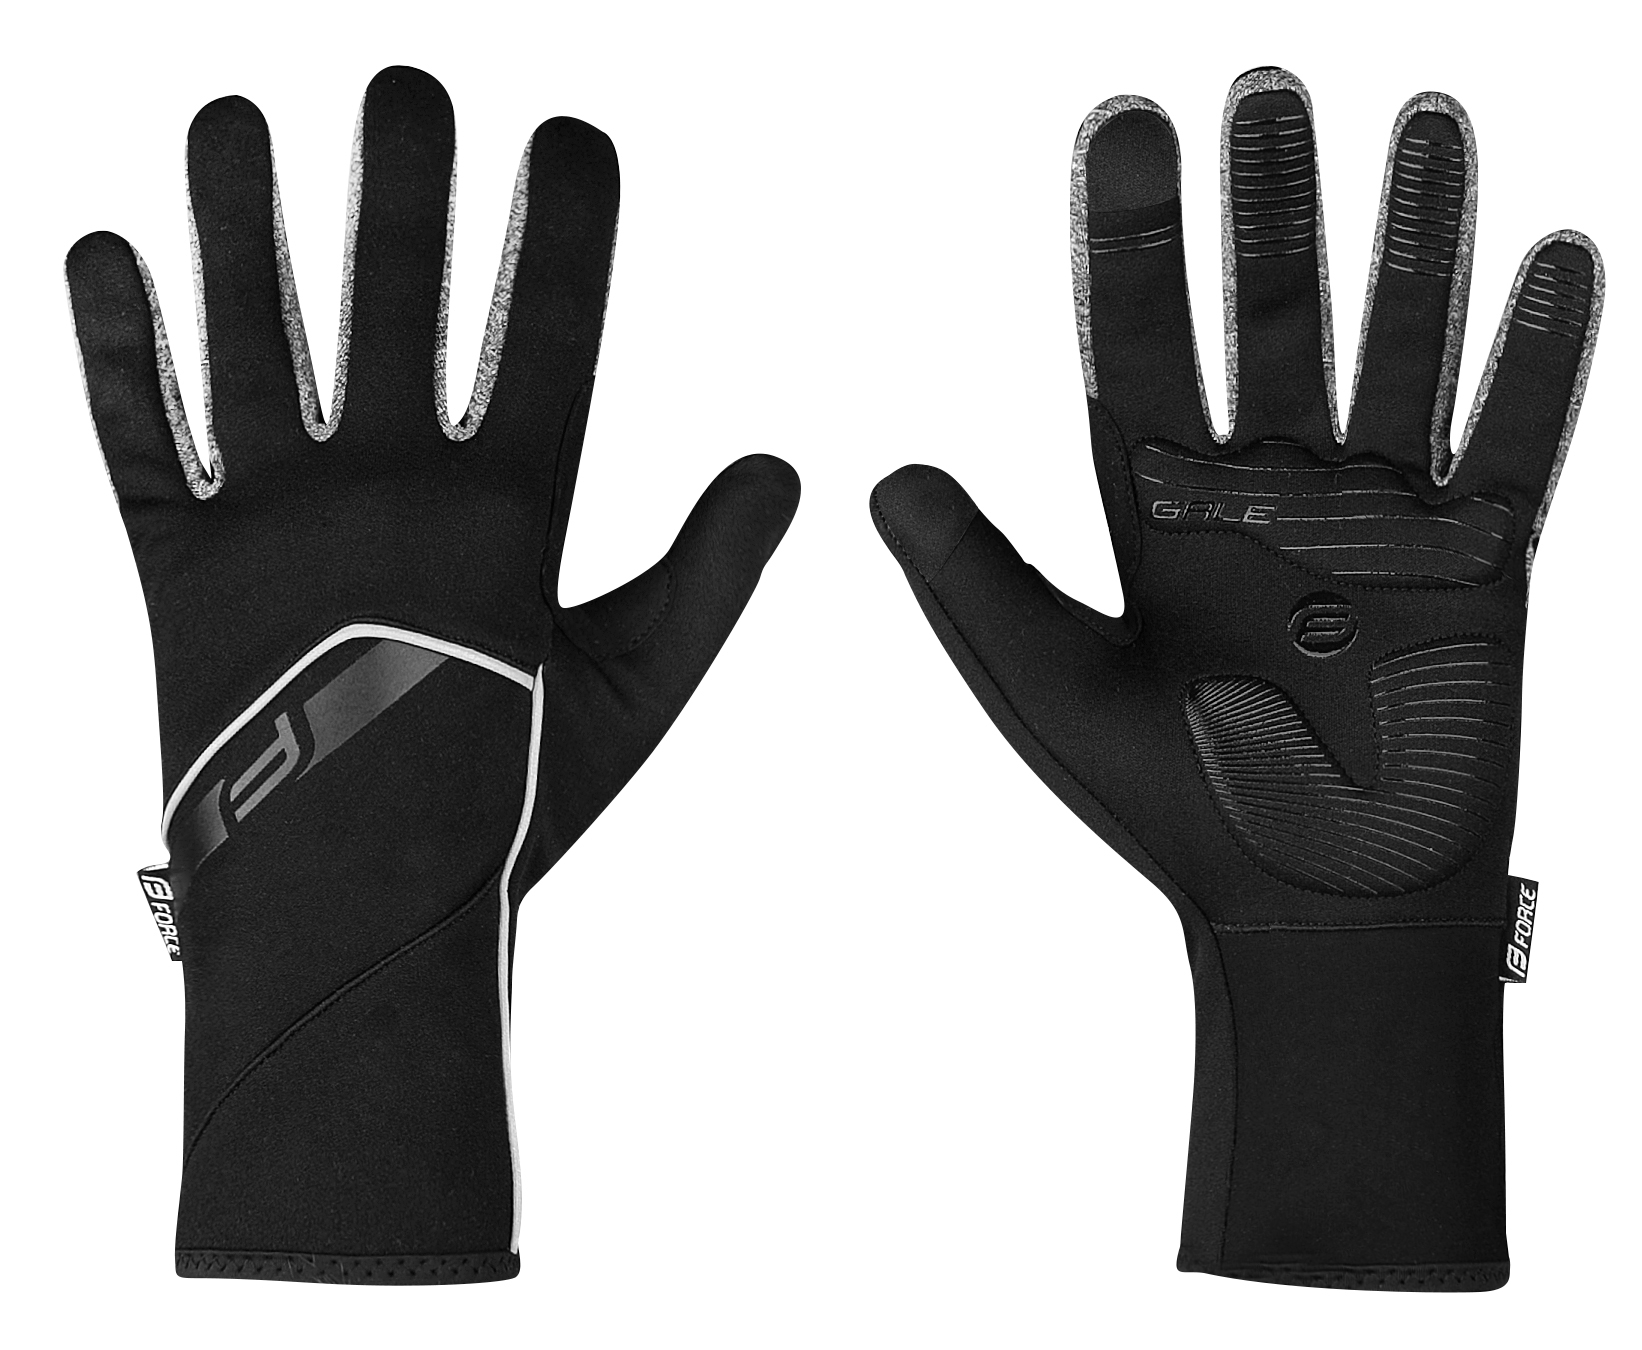 FORCE rukavice F GALE softshell, jaro-podzim, černé Velikost: XL